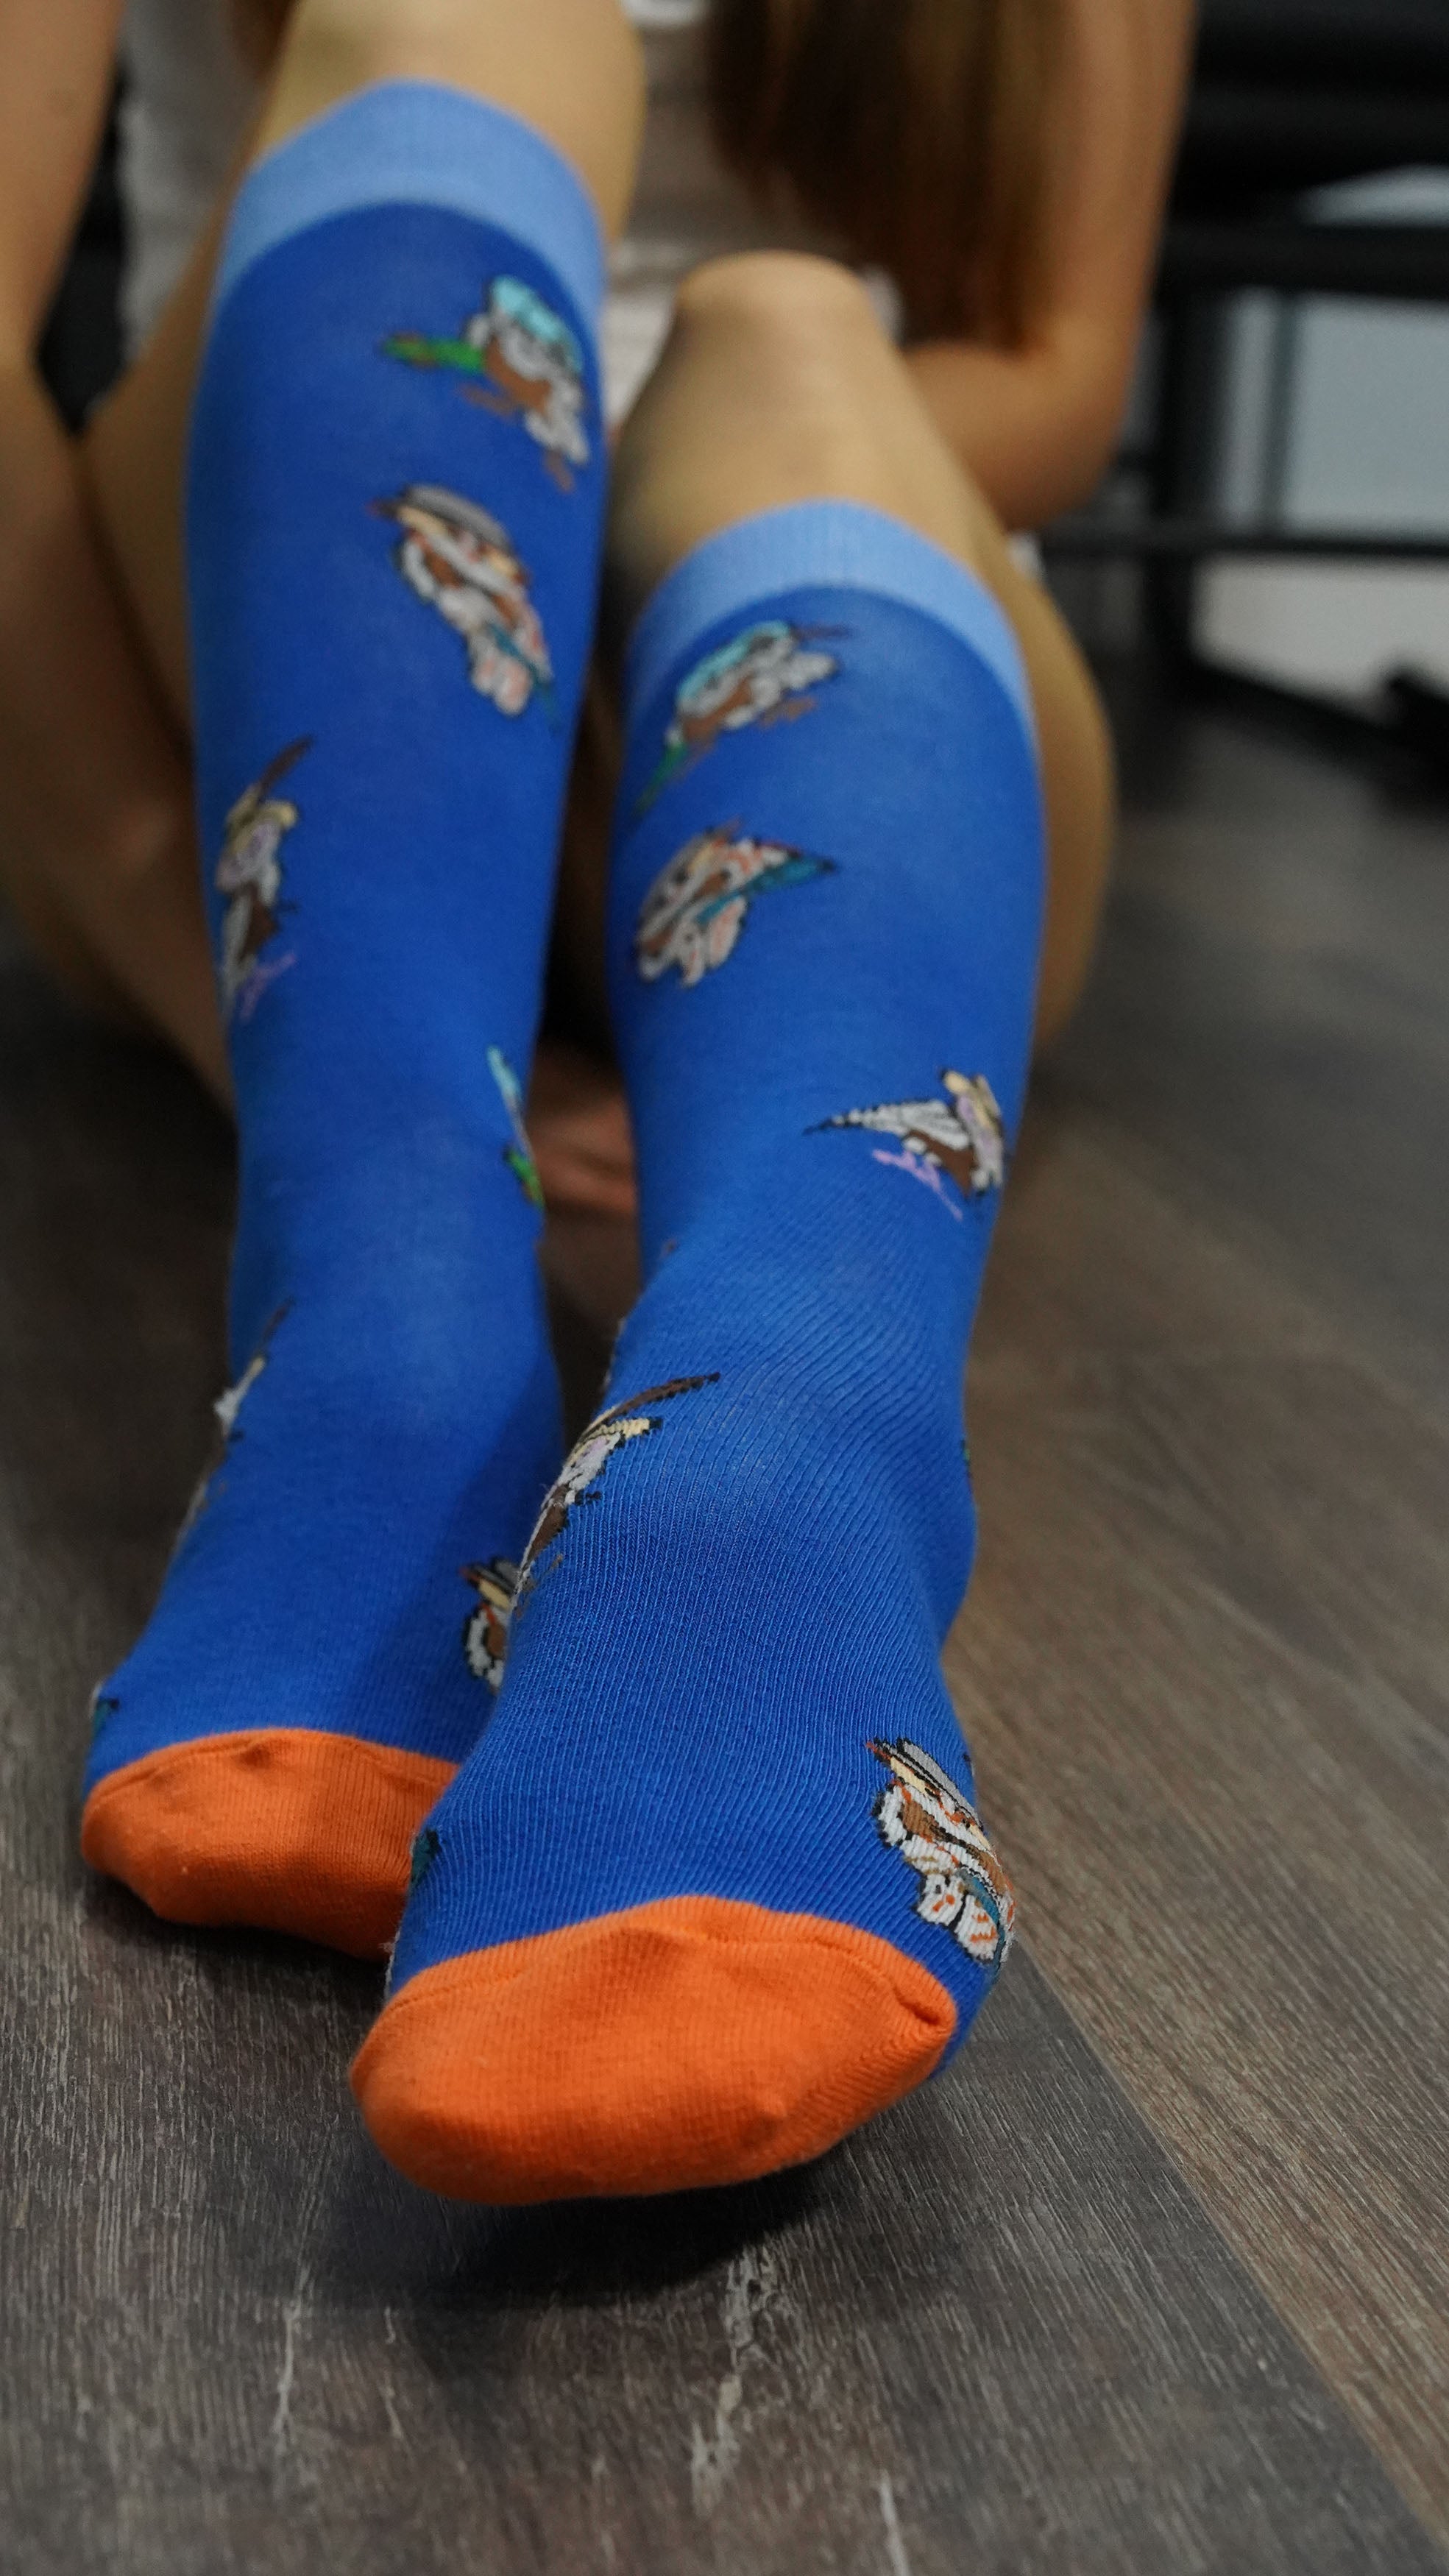 Women's Animal Planet Knee High Socks Set